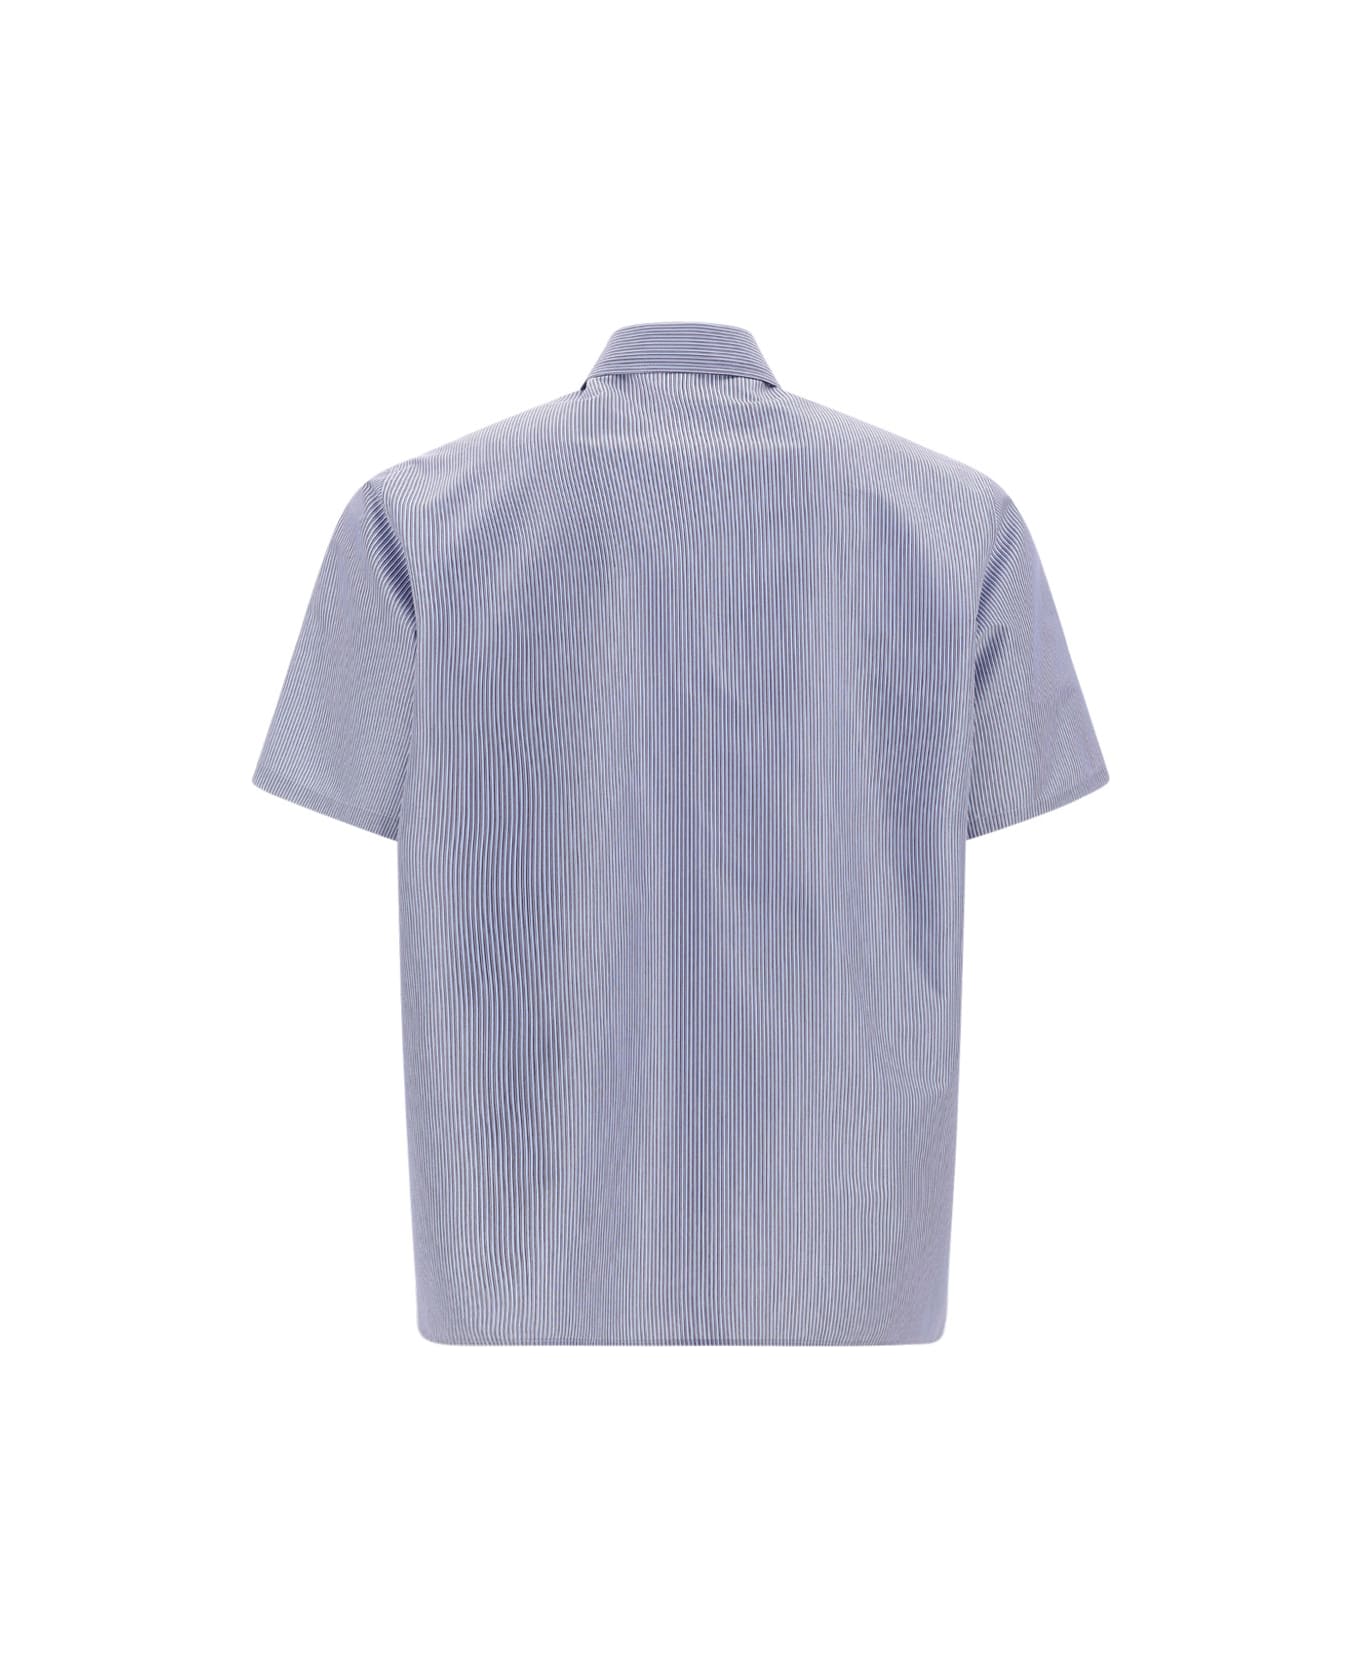 Valentino Shirt - Azzurro/bordeaux/navy